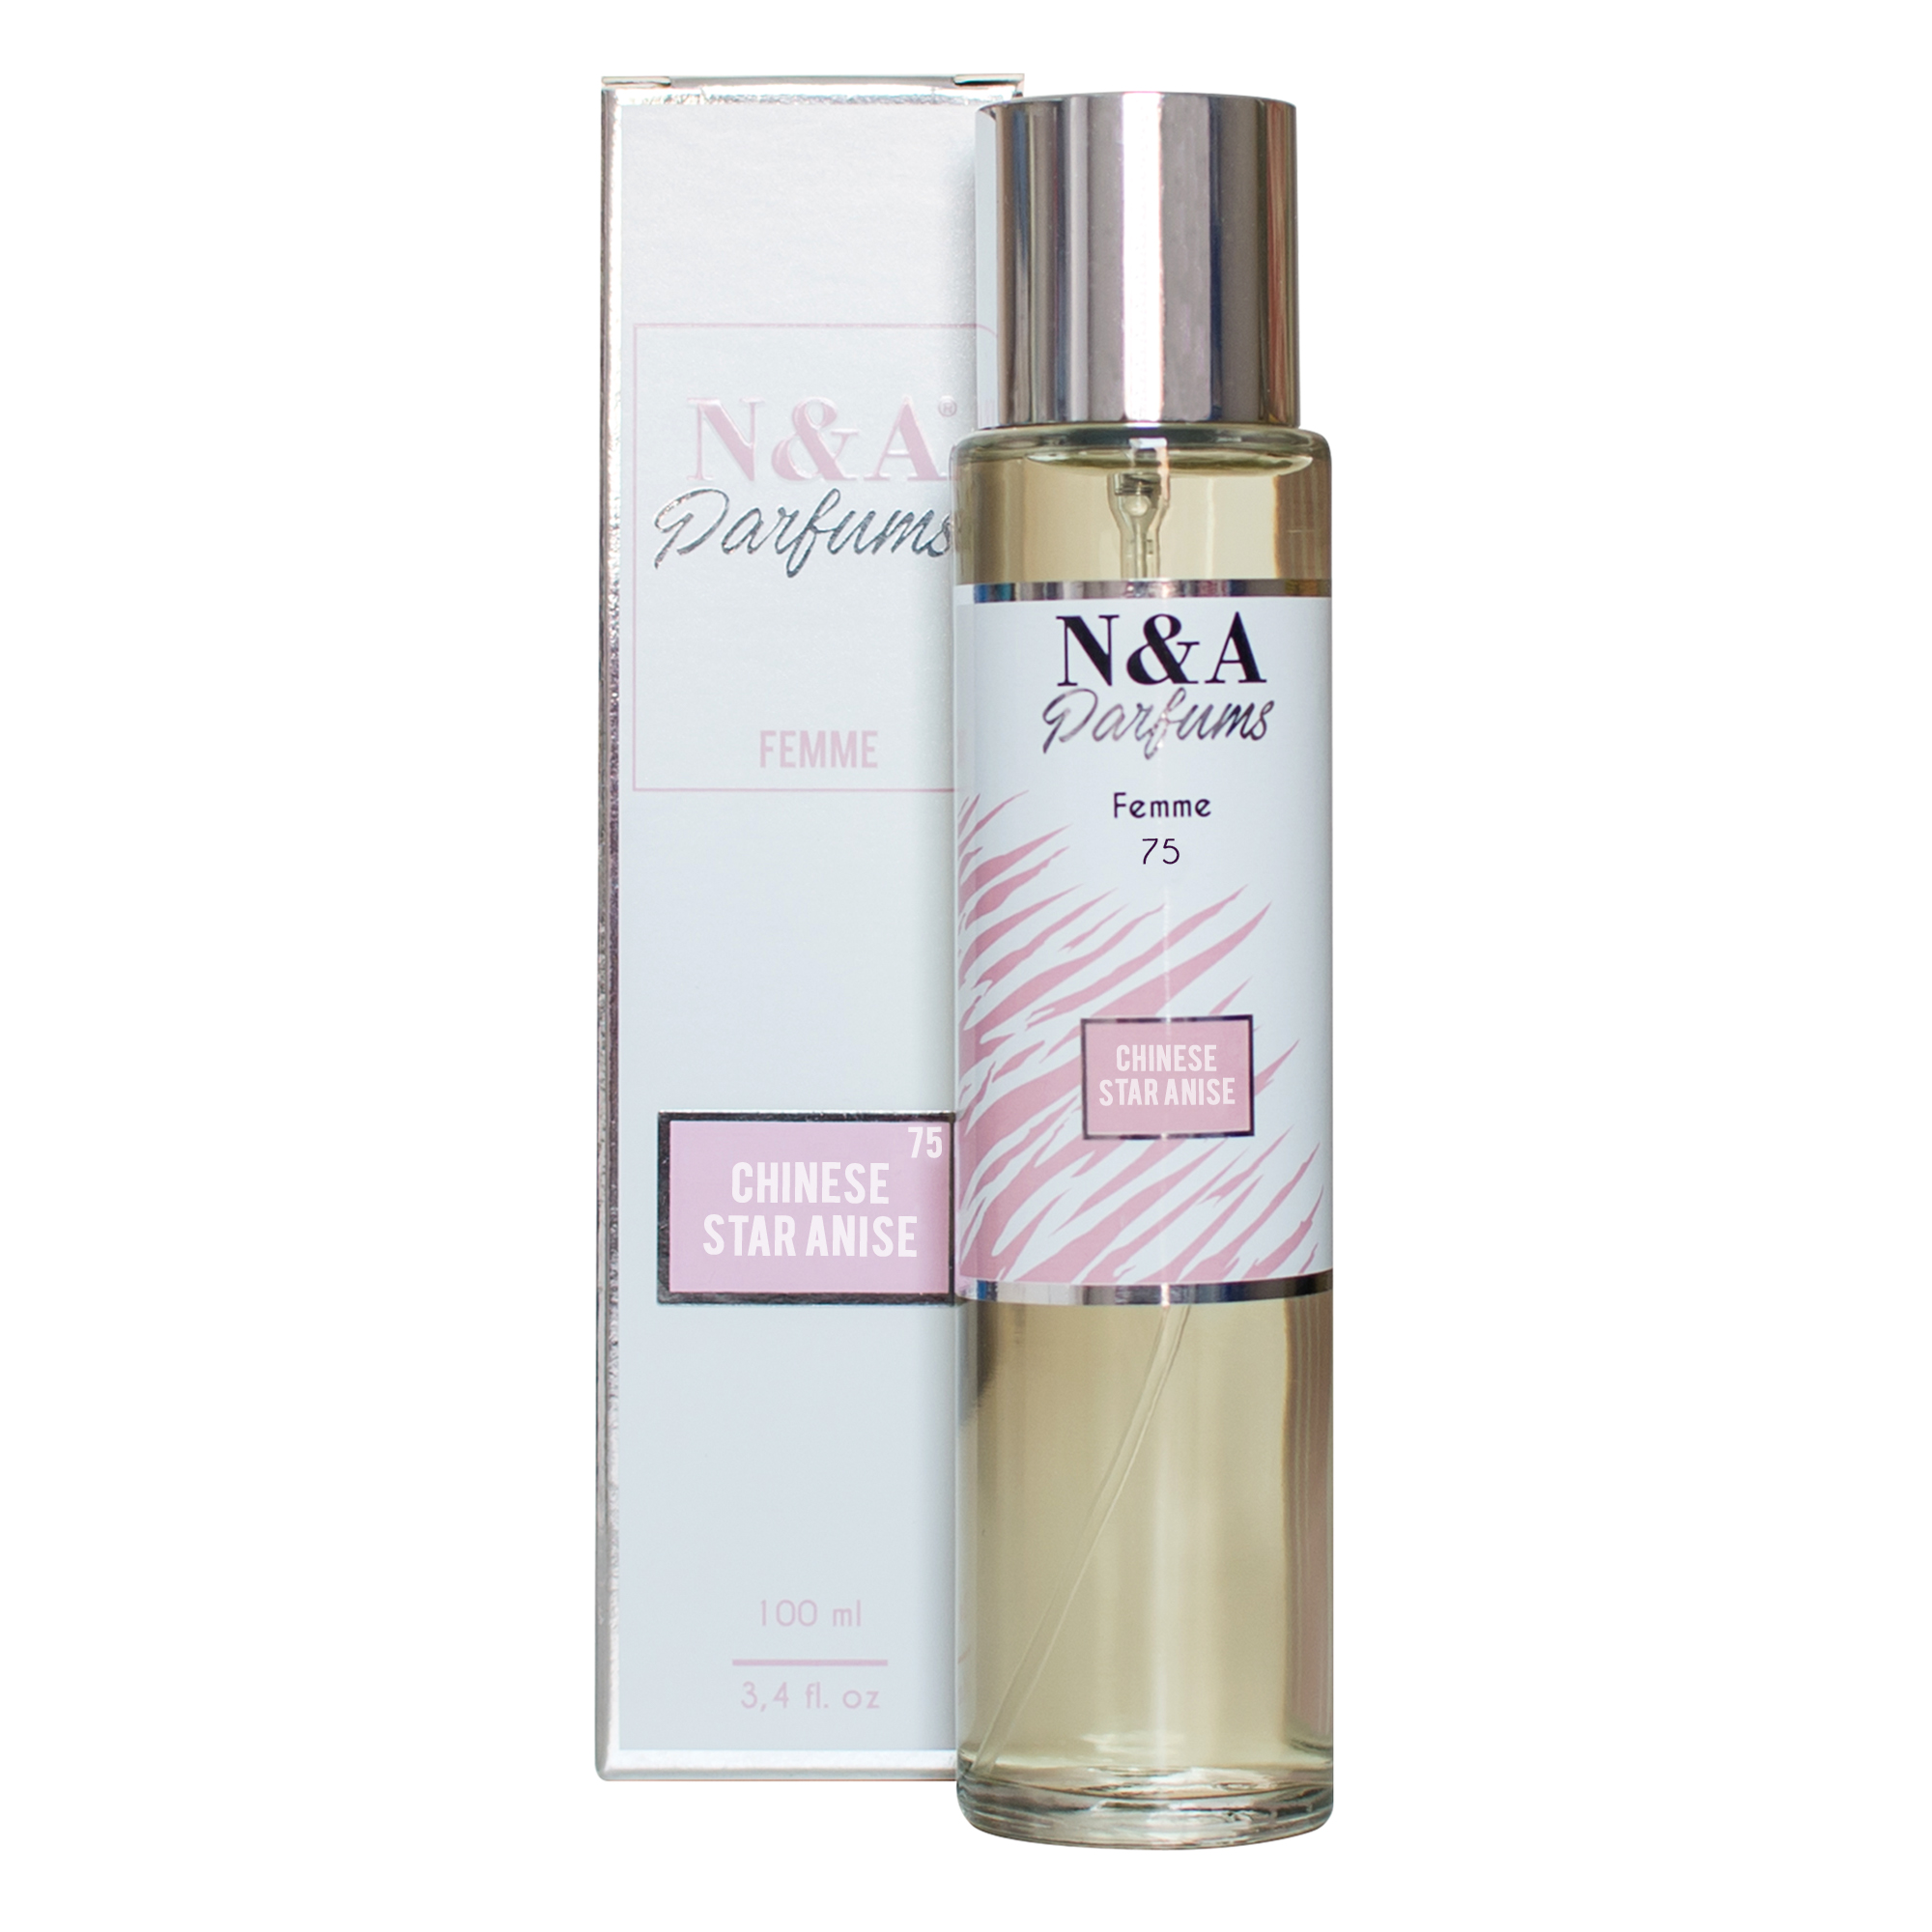 Perfume N&A 75 100ml - Se Gosta de JEAN PAUL GAULTIER CLASSIQUE experimente a Nossa Fragrância